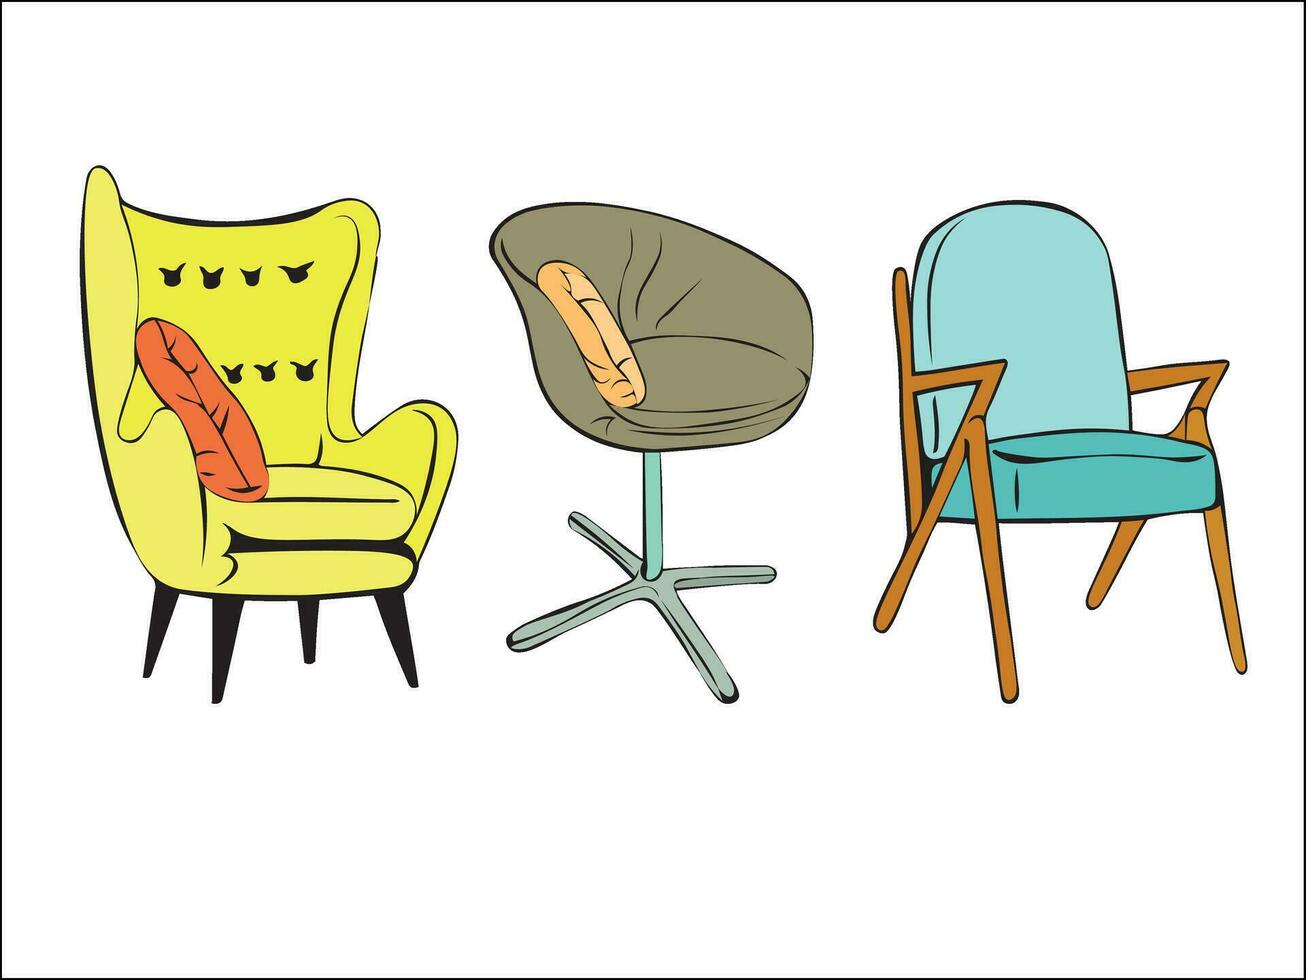 uppsättning av mjuk stolar för Hem och kontor i annorlunda färger och former. stoppade möbel för bekvämlighet och dekoration. dekor element för de levande rum och sovrum. vektor